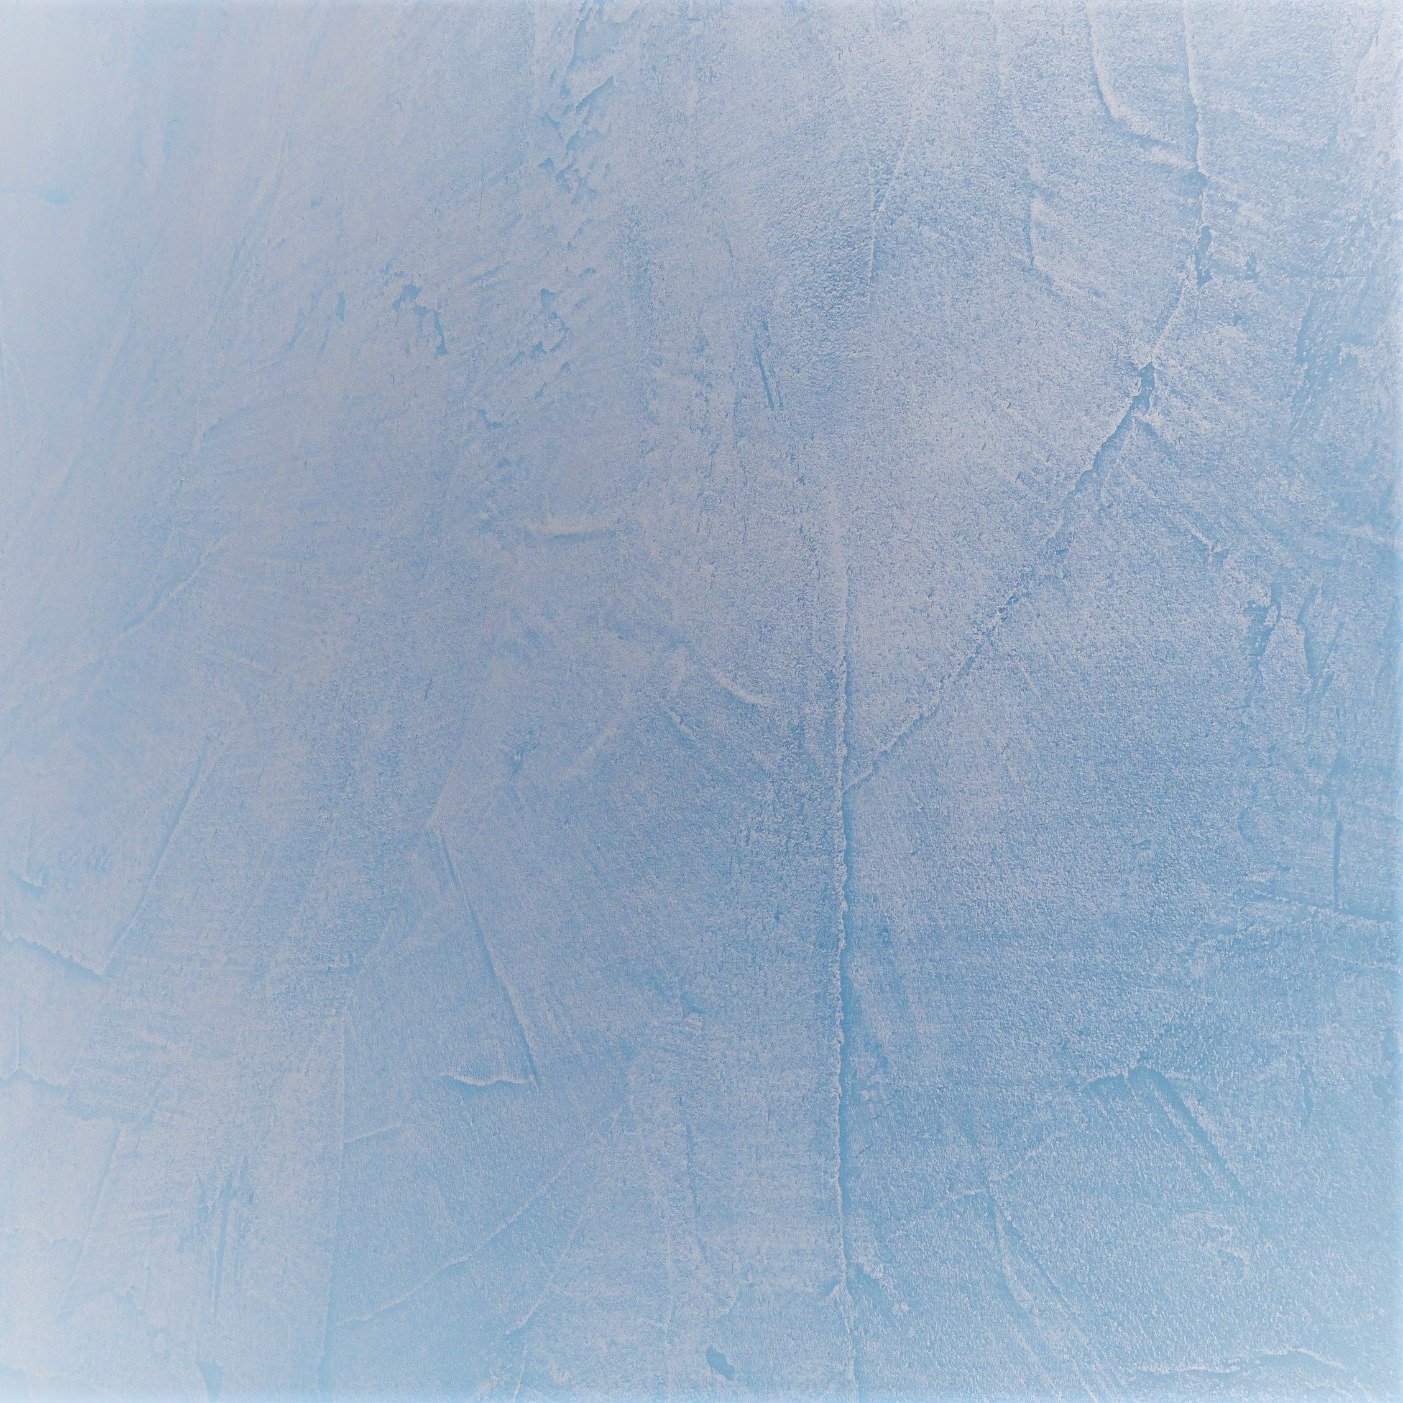 Métal bleu, métallisation reflets bleutés - Matières et Béton